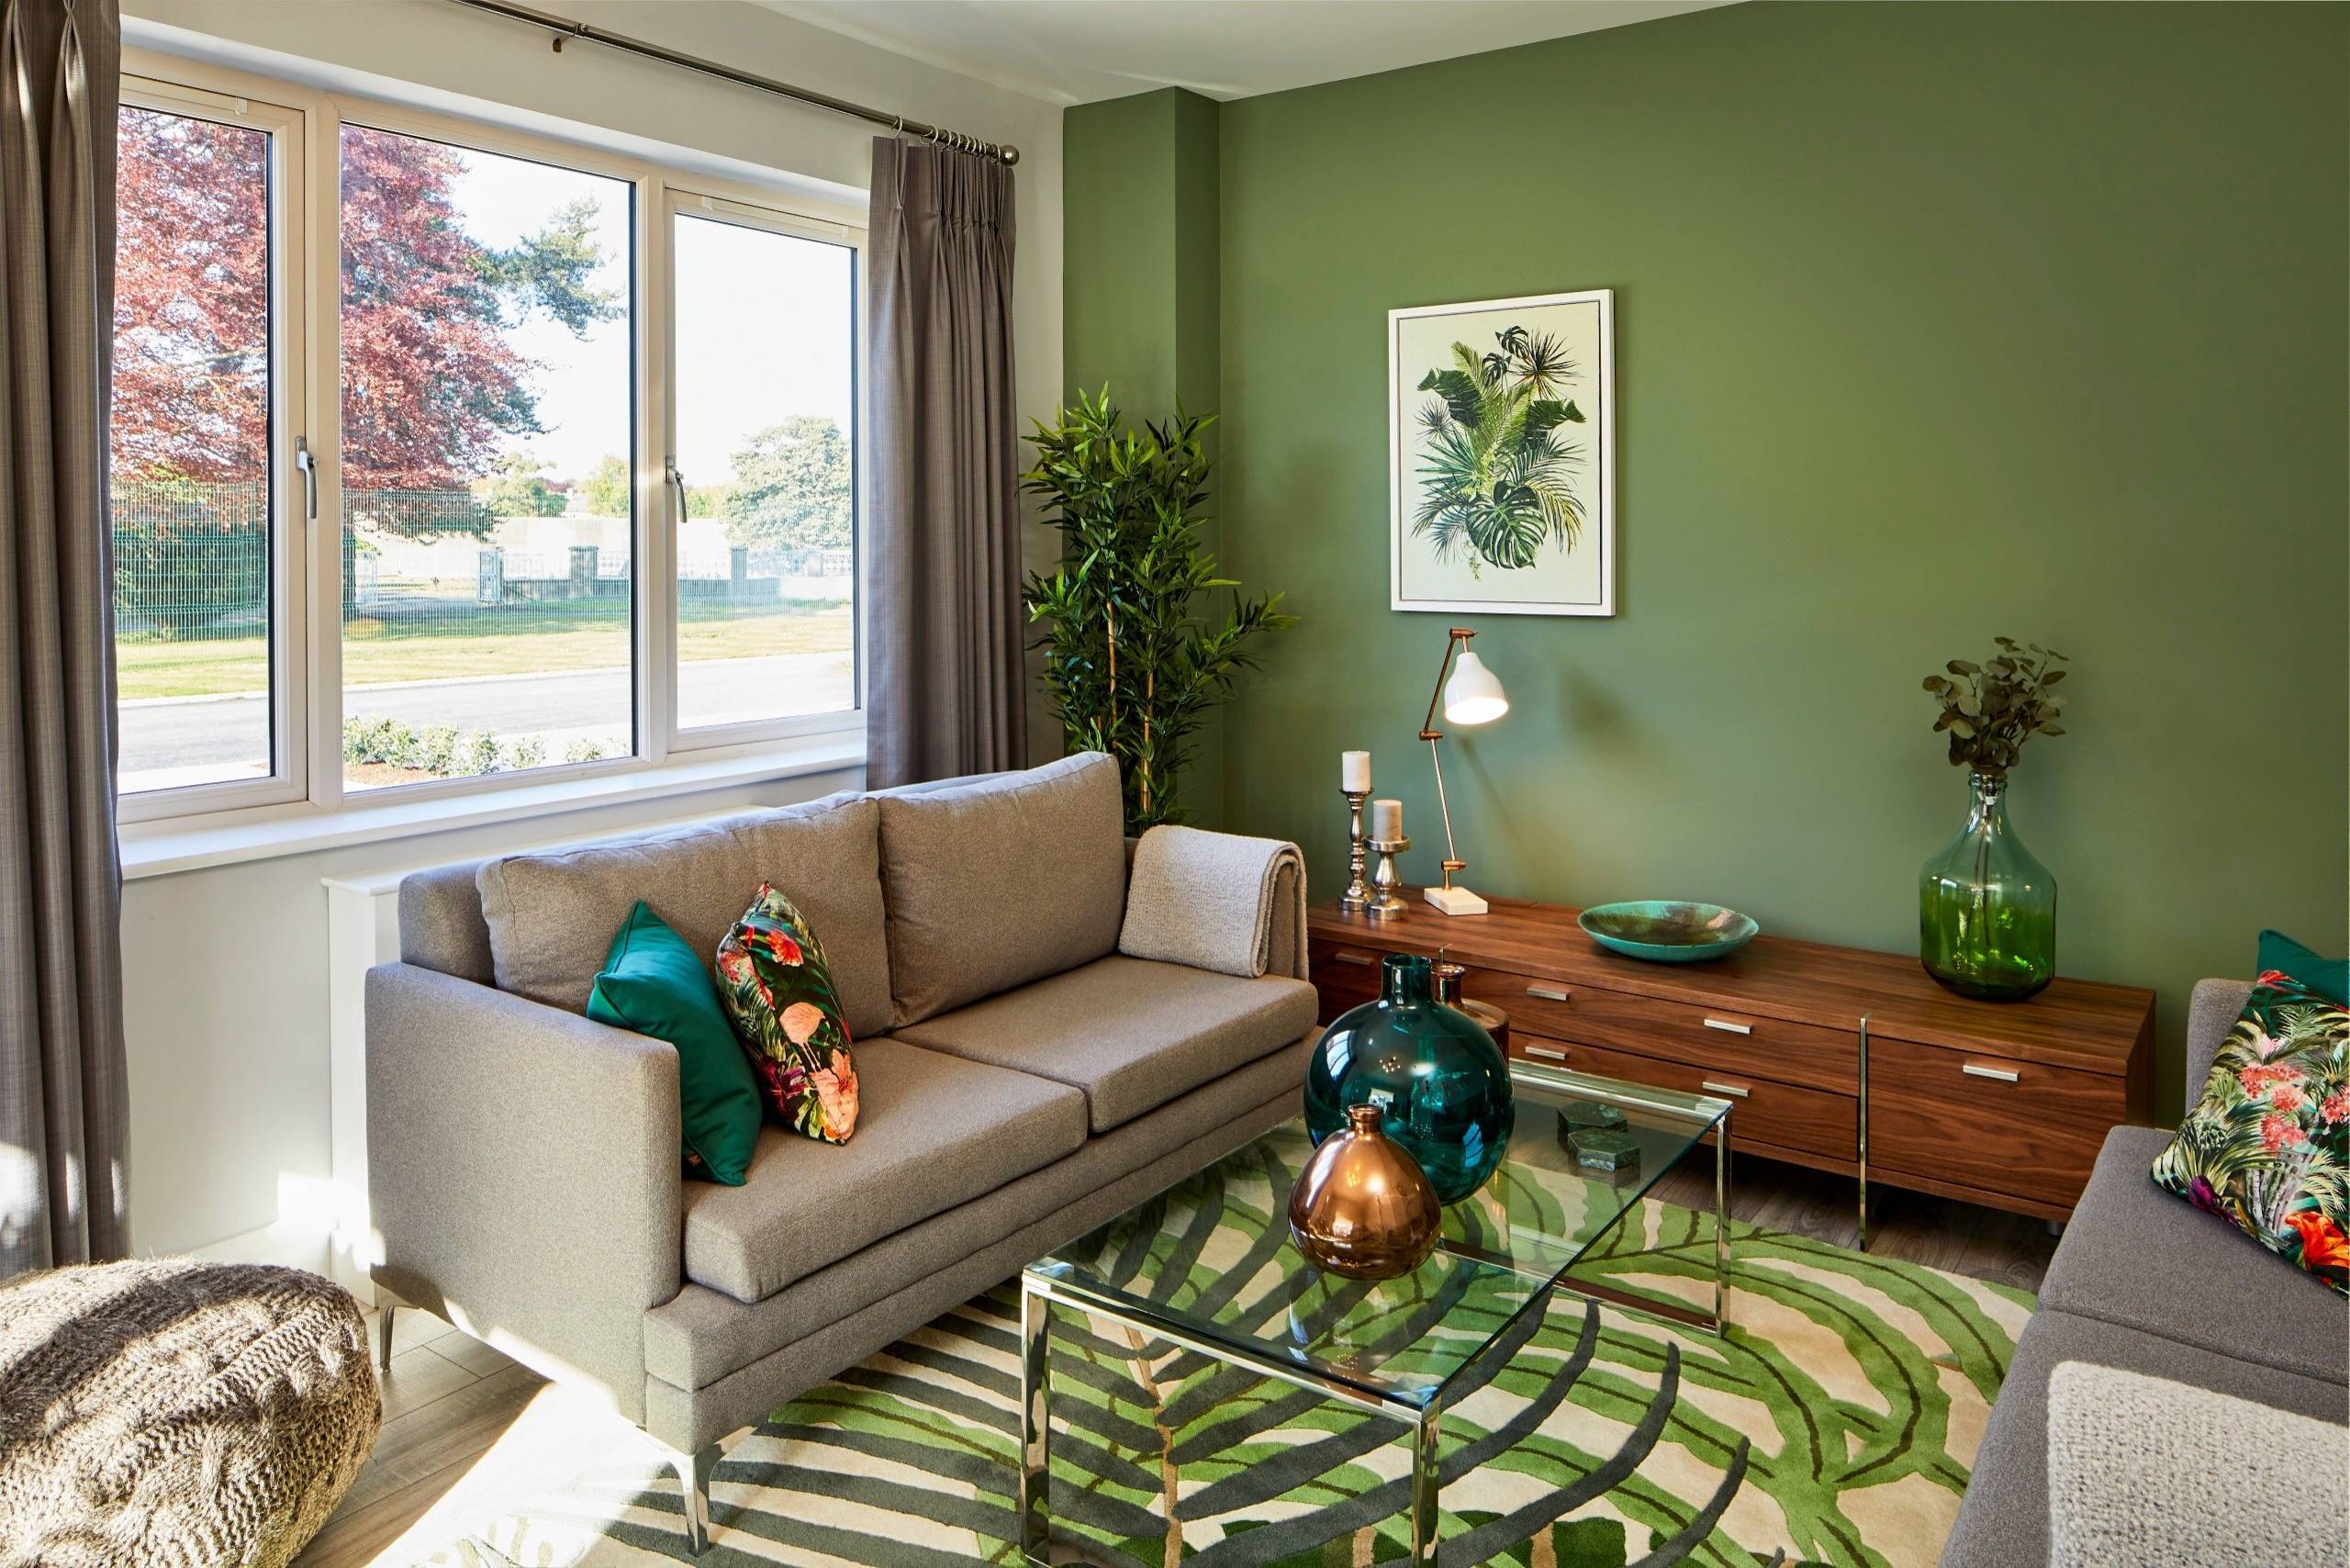 Мебель зеленого цвета в интерьере фото